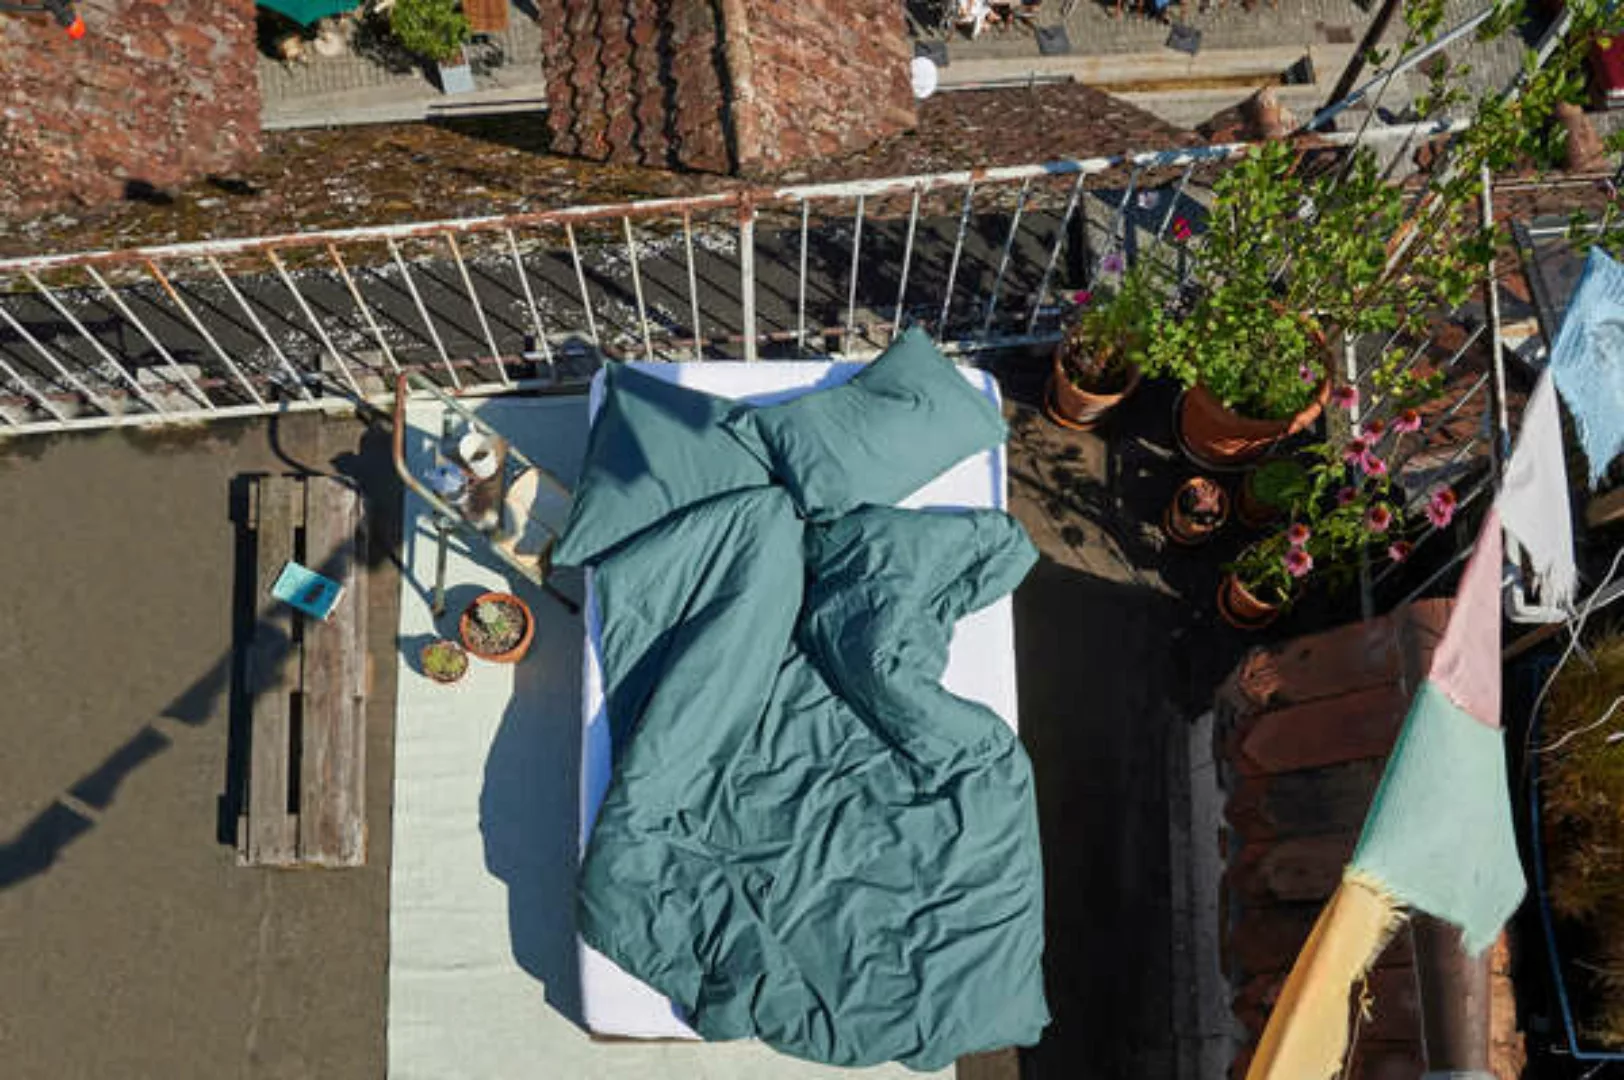 Bettdeckenbezug Baumwolle - Louise 155x220cm günstig online kaufen